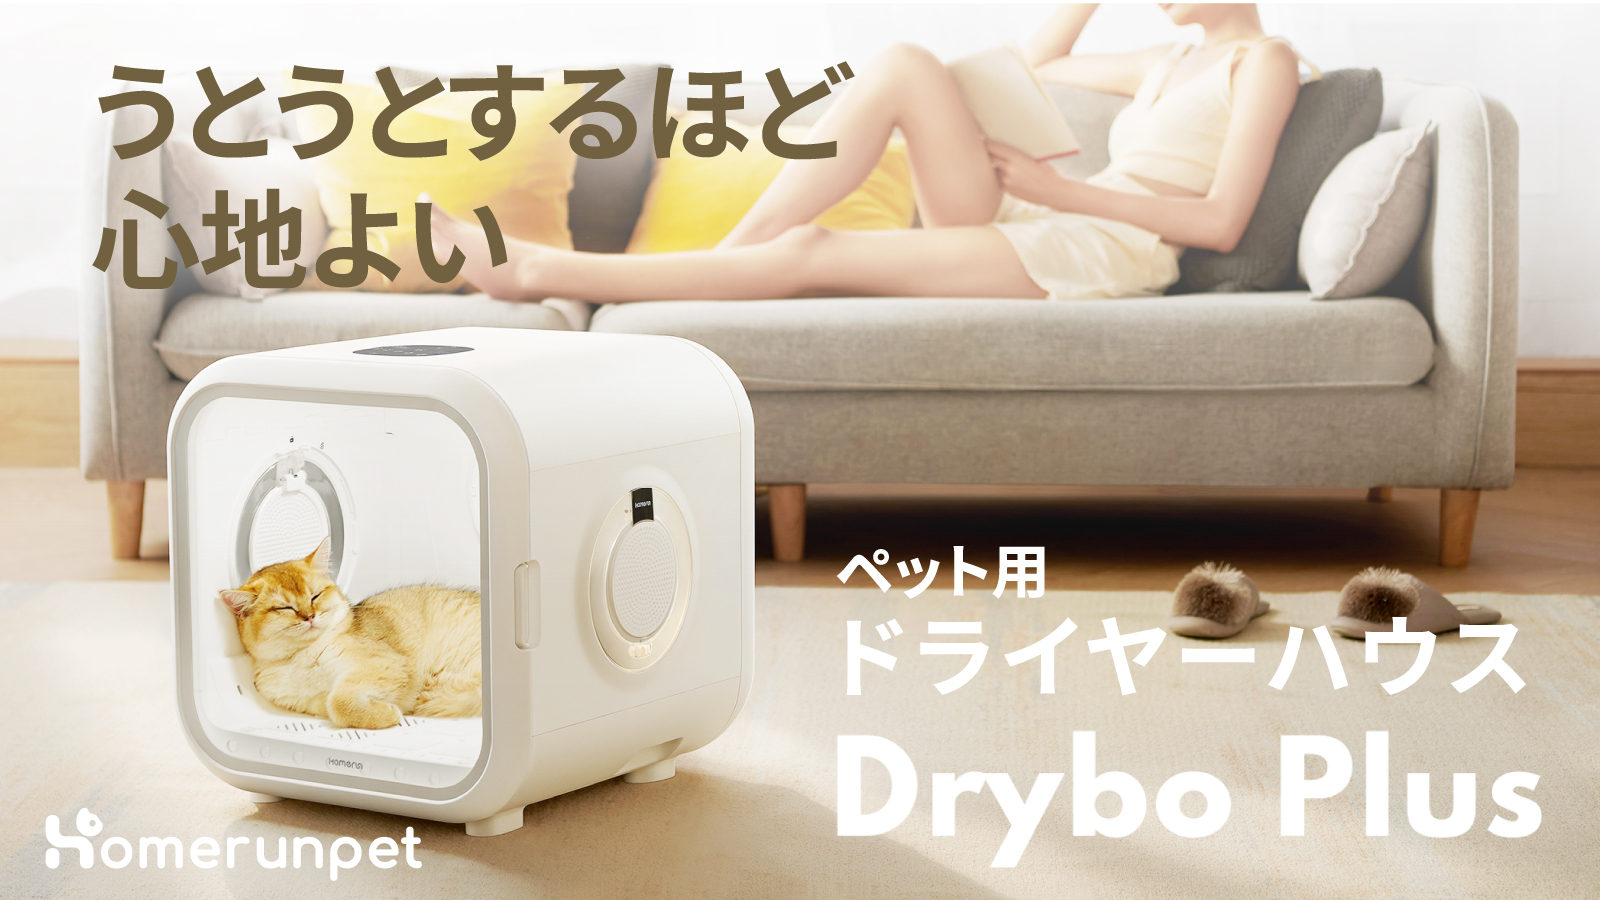 ペット用ドライヤーハウス Drybo plus | www.innoveering.net